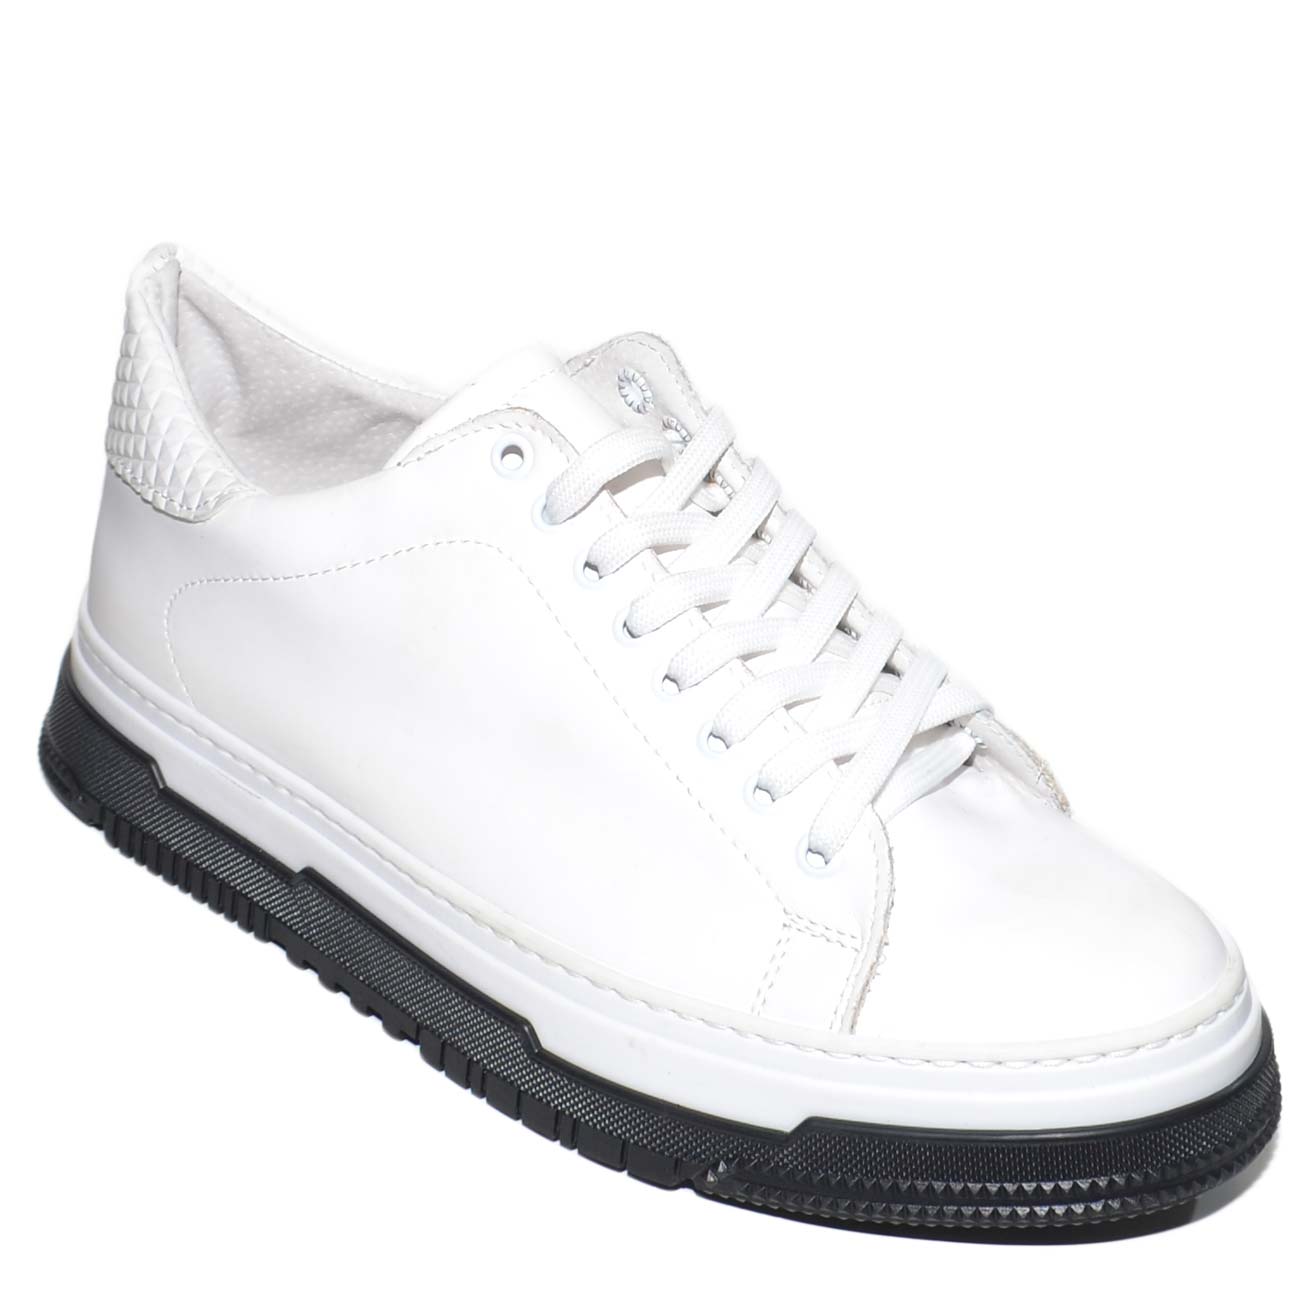 Sneakers uomo bassa bianca vera pelle gommata con fortino piramidal fondo cassettoni bicolore comfort moda made in italy